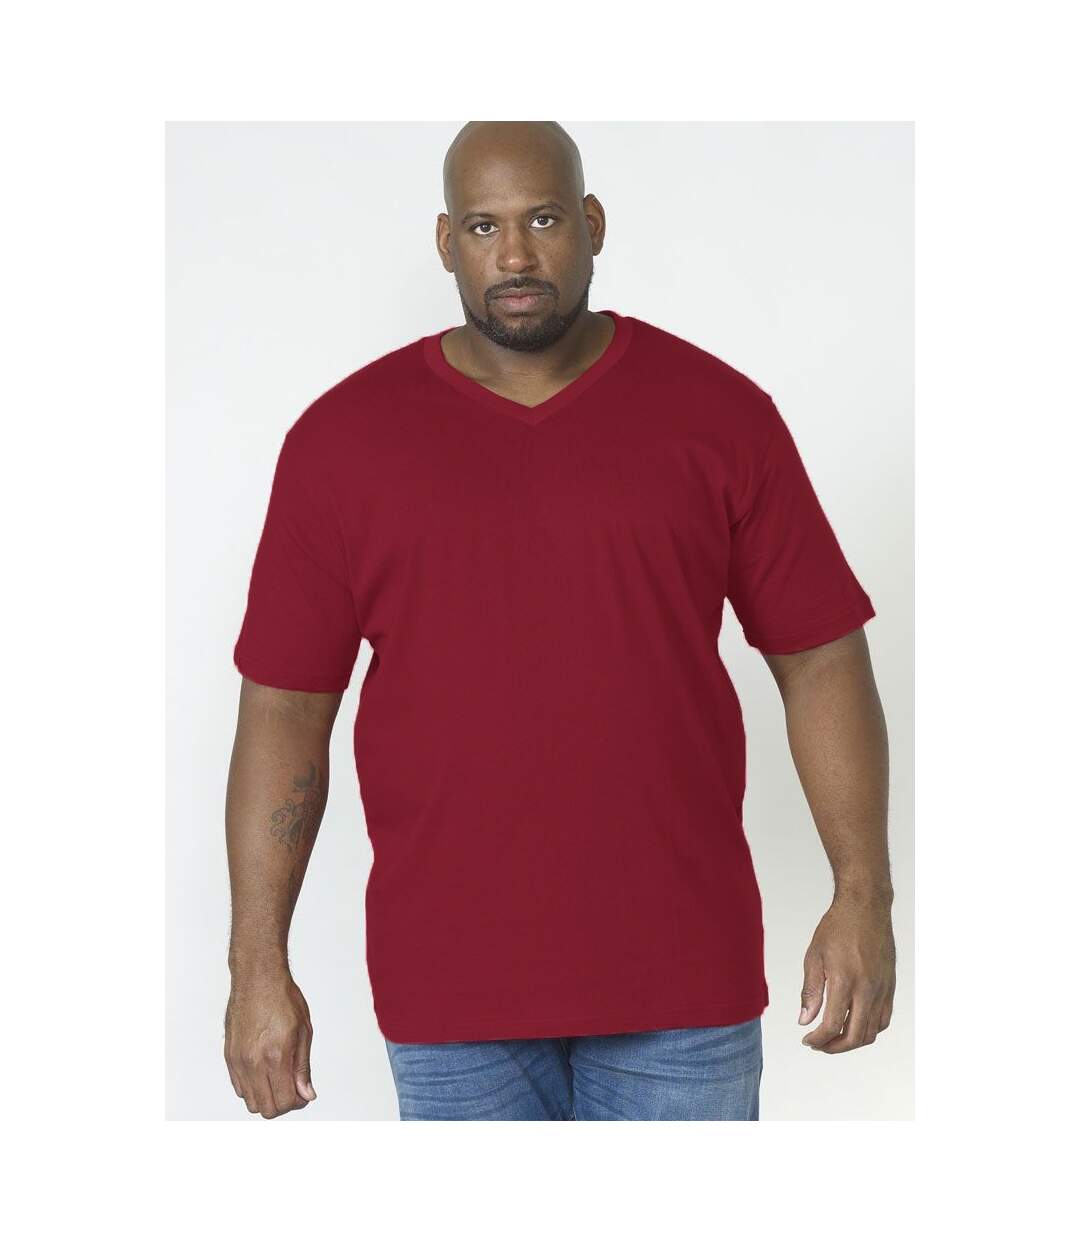 Duke - T-shirt col V SIGNATURE-2 - Homme (Rouge) - UTDC167